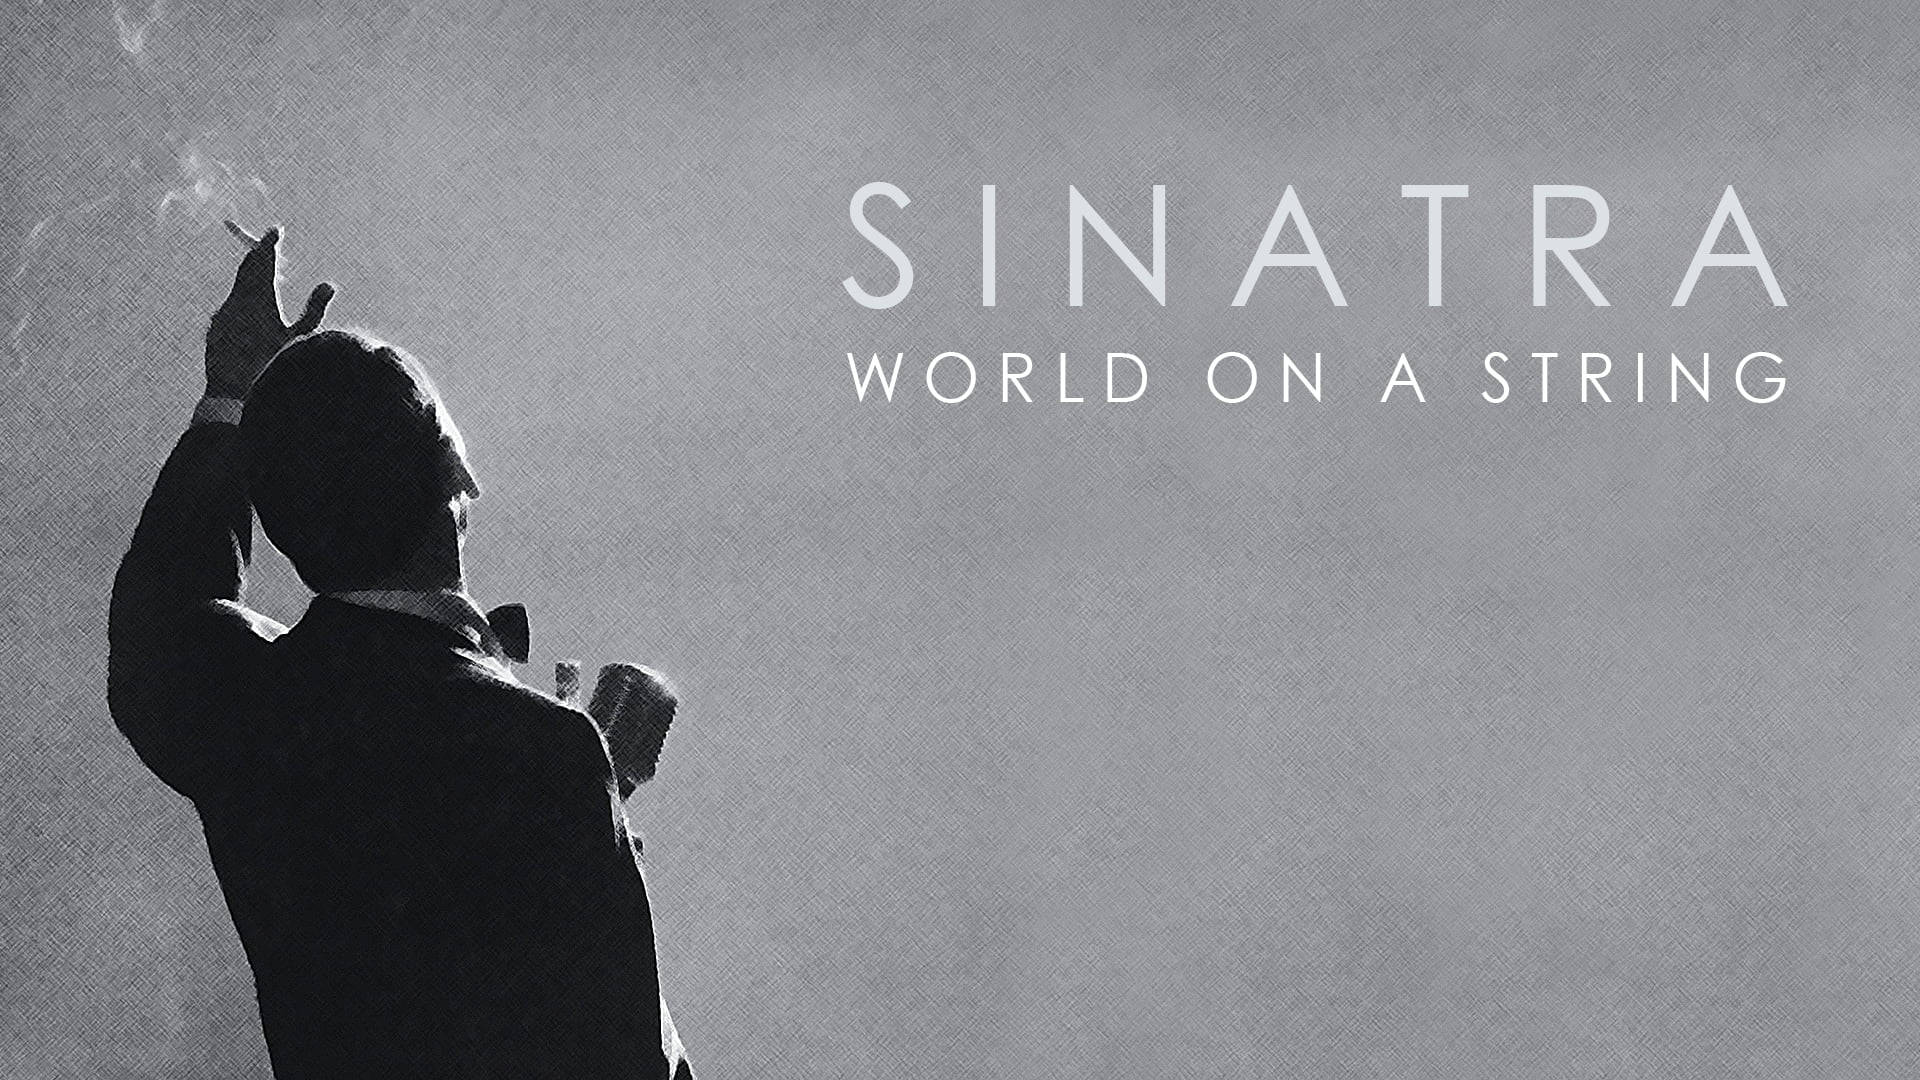 Frank Sinatra World On A String Wallpaper